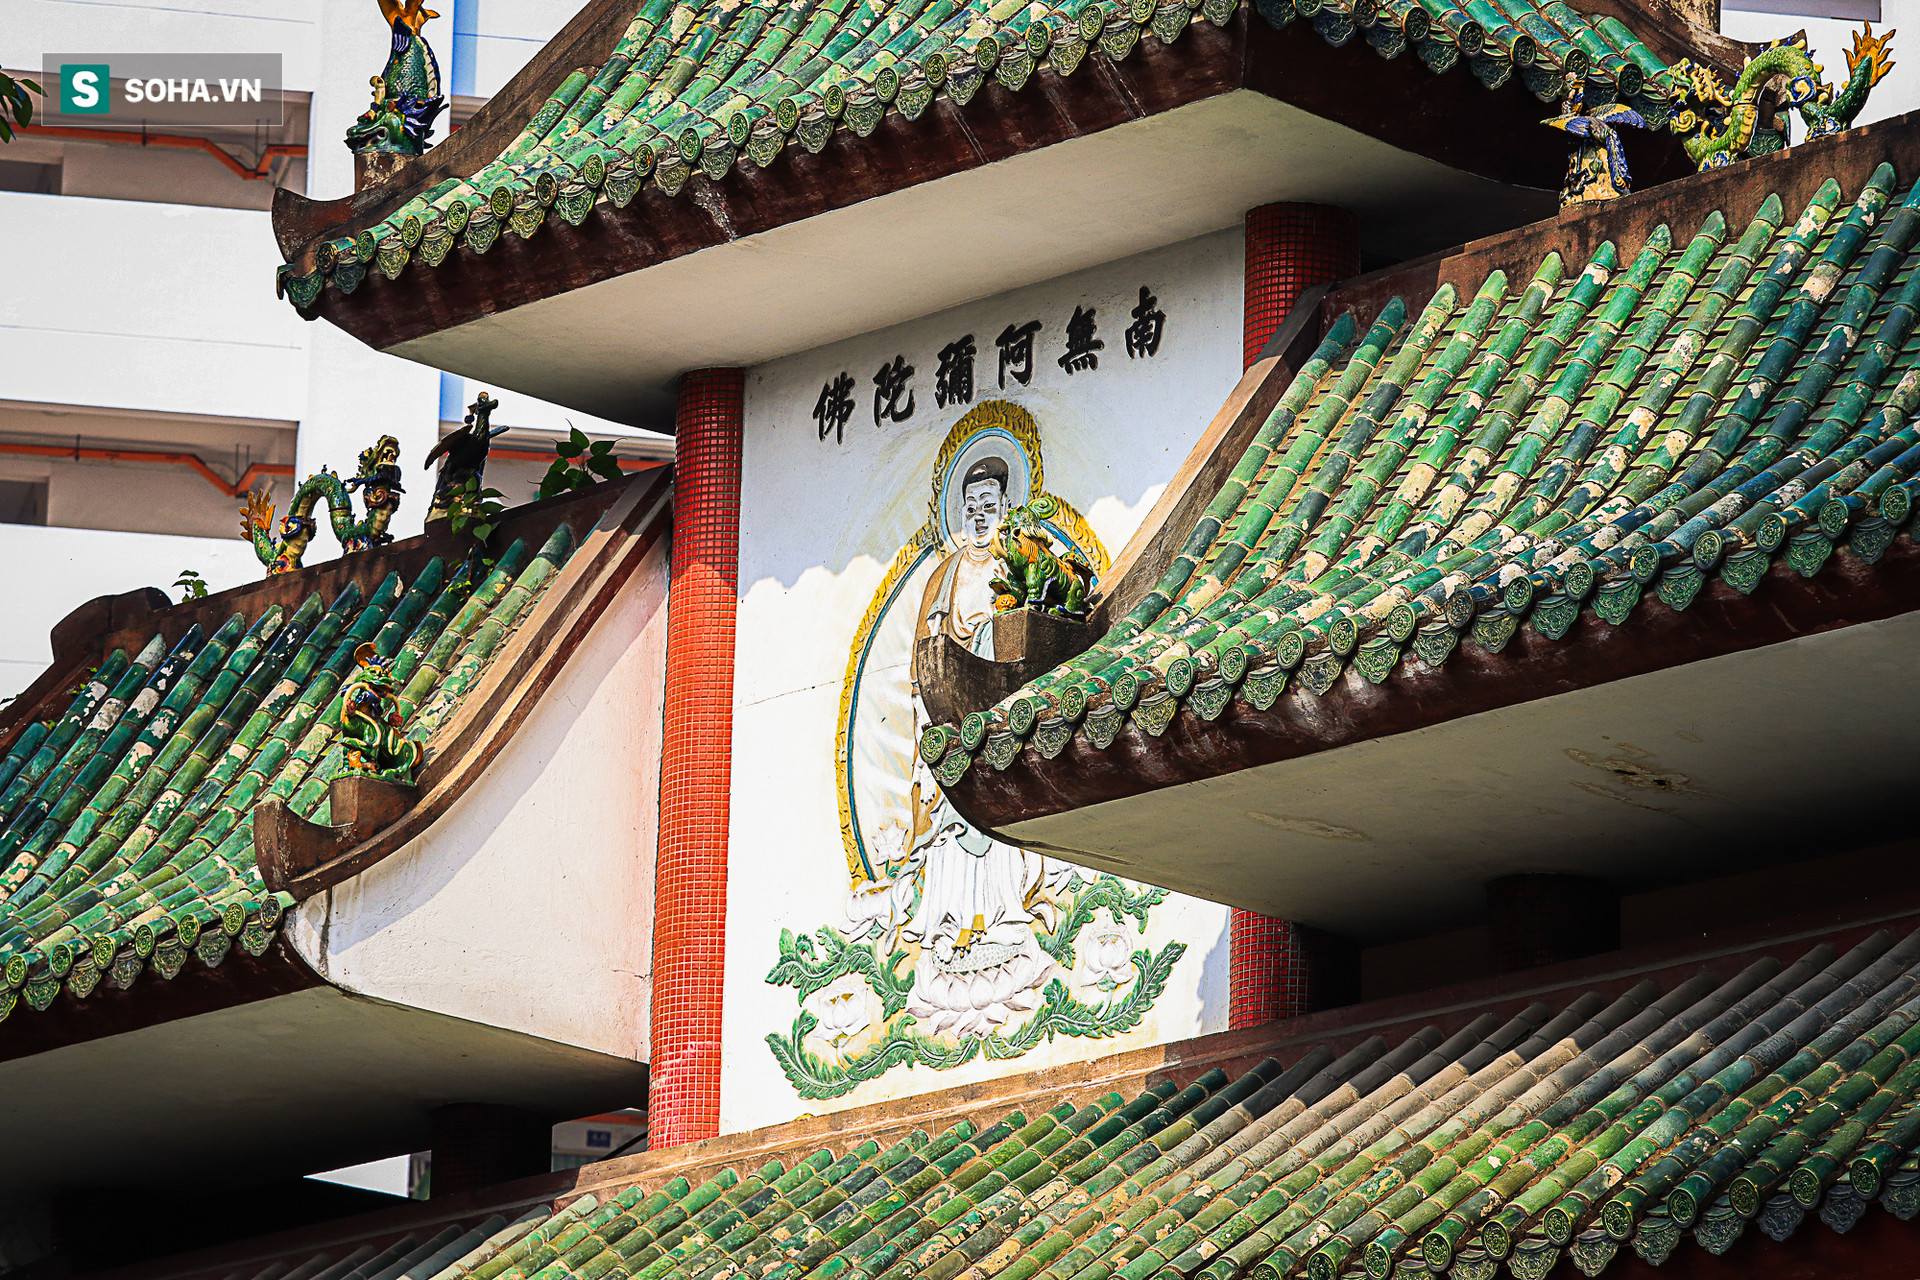  Người Trung Quốc có những công trình kiến trúc gì đặc biệt sau 300 năm ở TP HCM? - Ảnh 9.